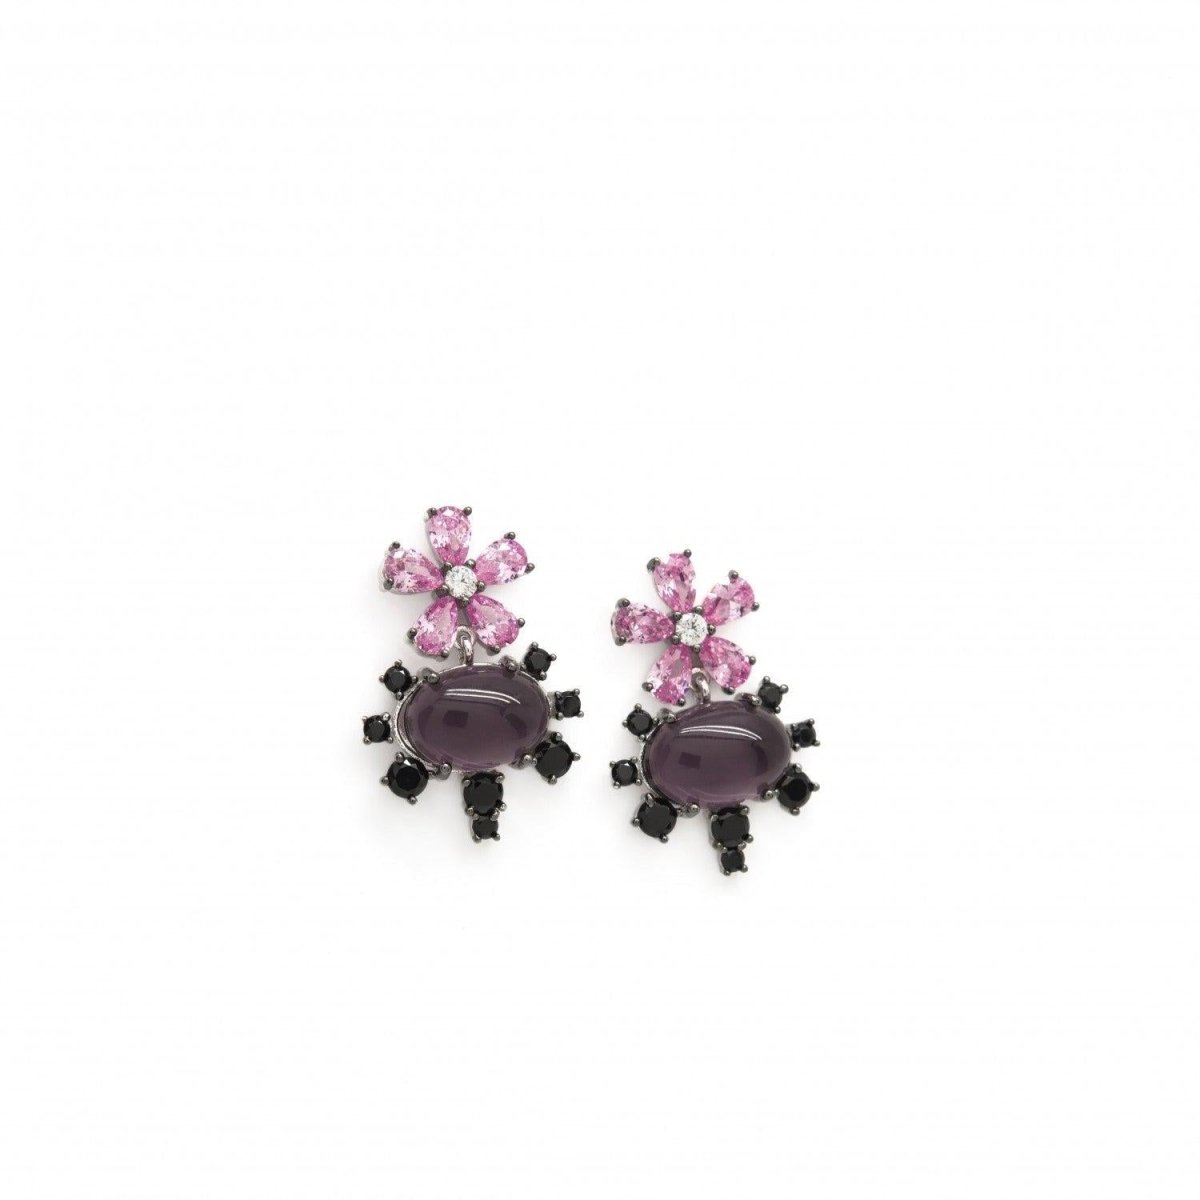 Pendiente · Pendientes de piedras de colores plata morados diseño floral con circonitas rosas y negras